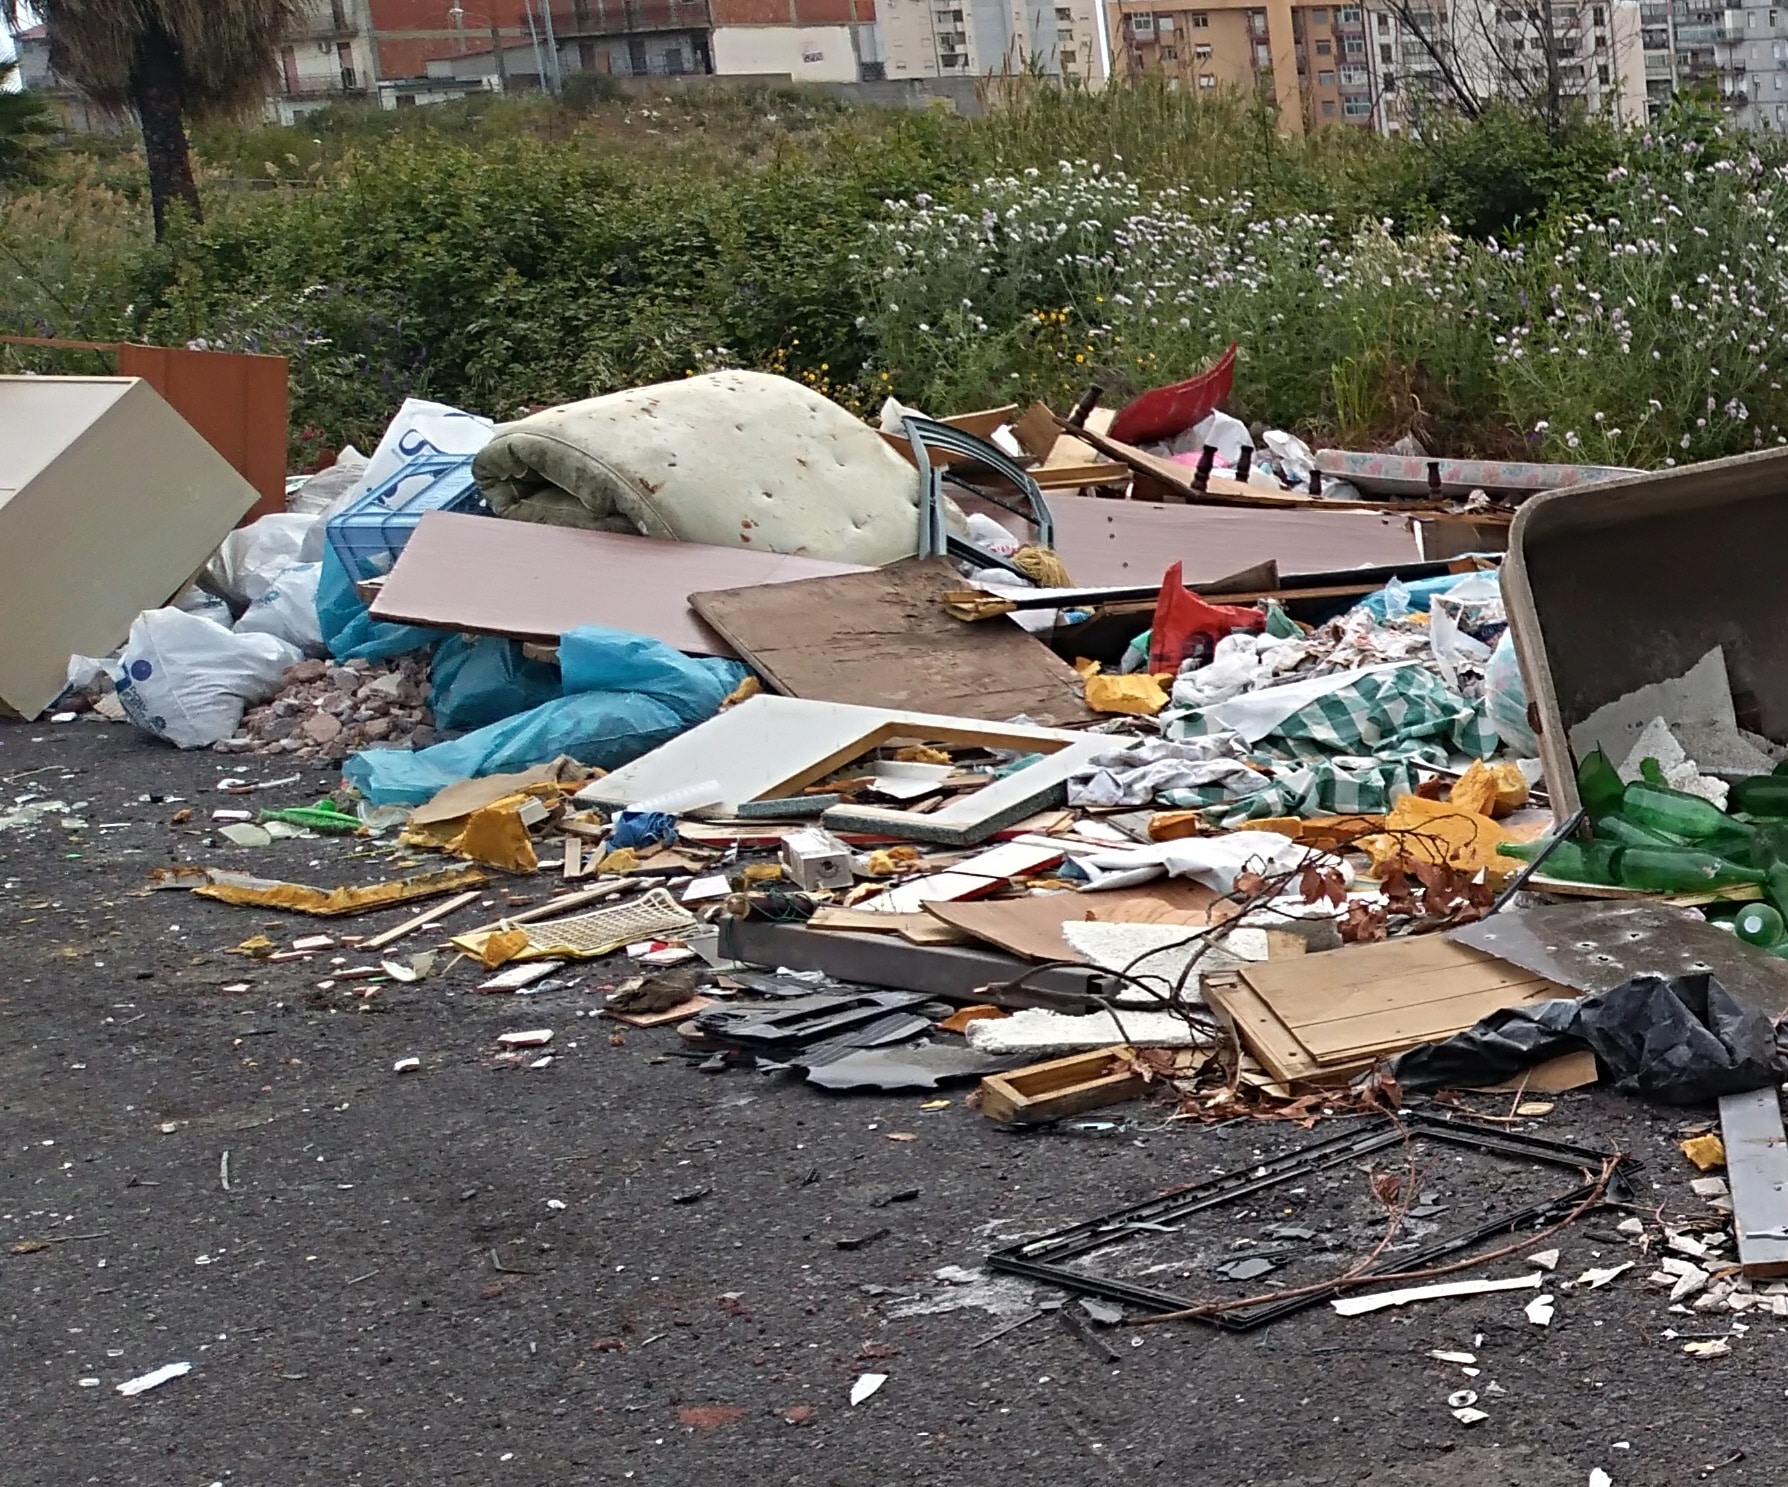 Catania sommersa da rifiuti, la denuncia di Ersilia Saverino: “Potenziare controlli, serve coscienza verde”